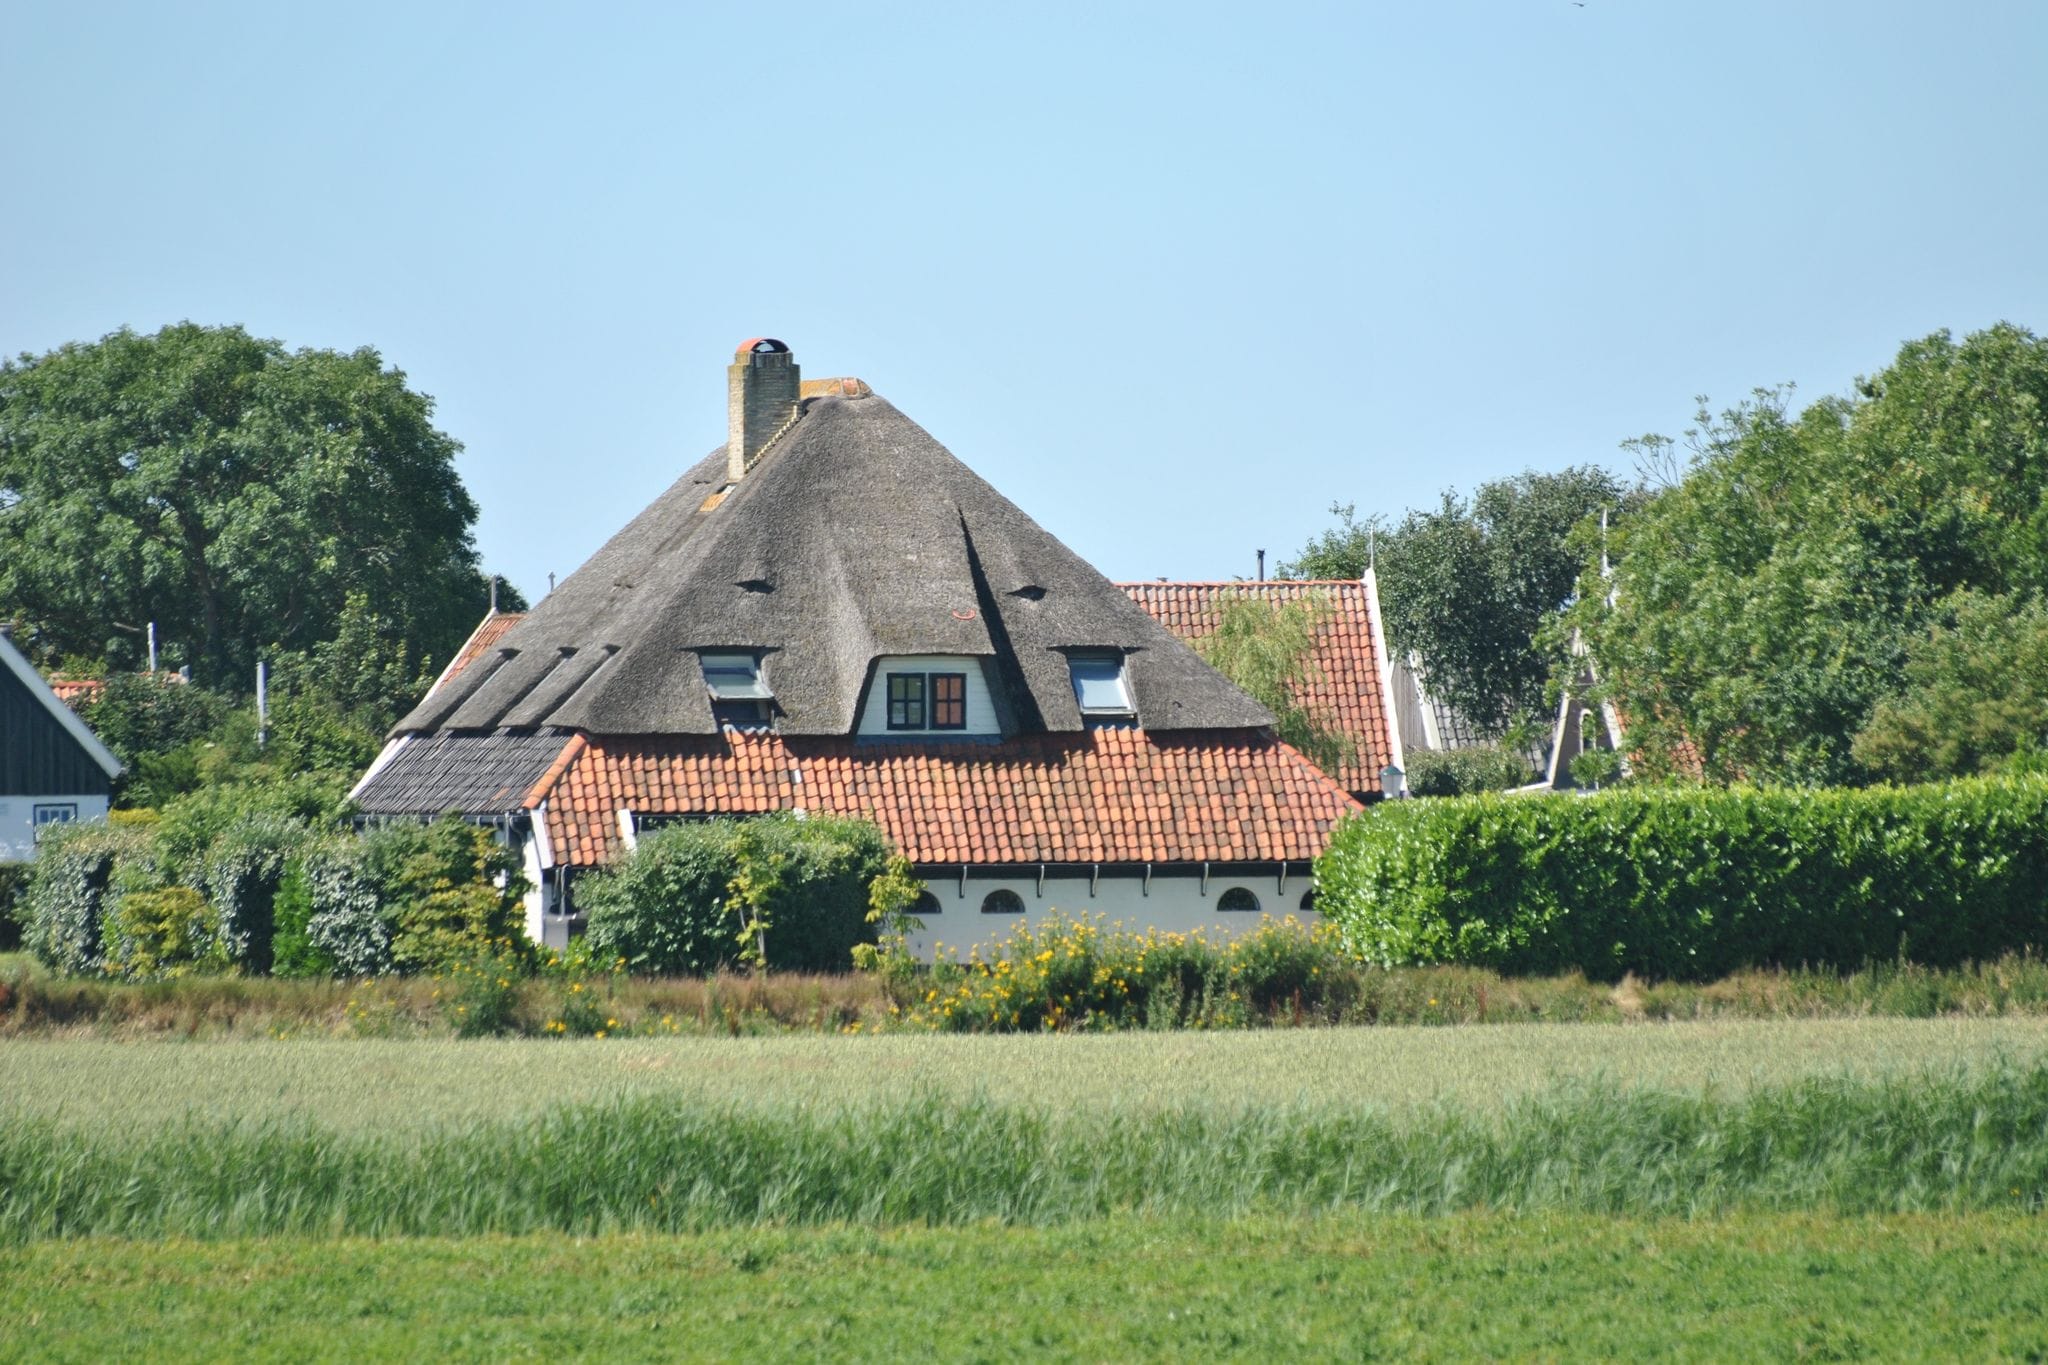 Ferienhaus in Texel in der Nähe des Meeres